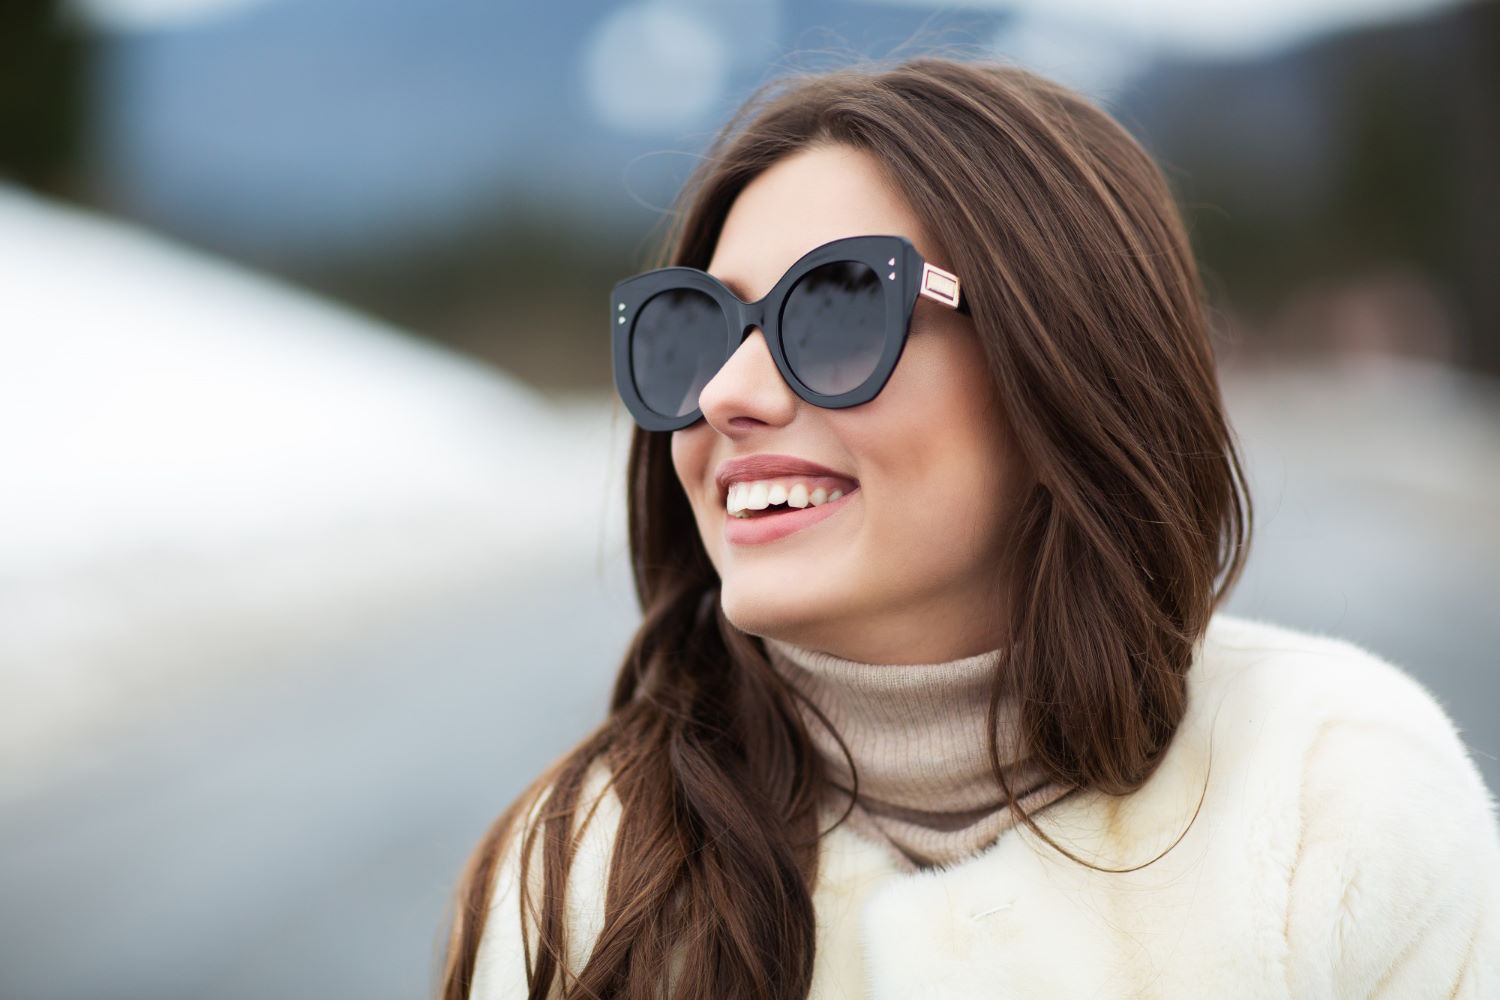 Okulary przeciwsłoneczne to nie tylko element ochrony przed szkodliwym promieniowaniem słonecznym, ale również modny dodatek do naszej stylizacji